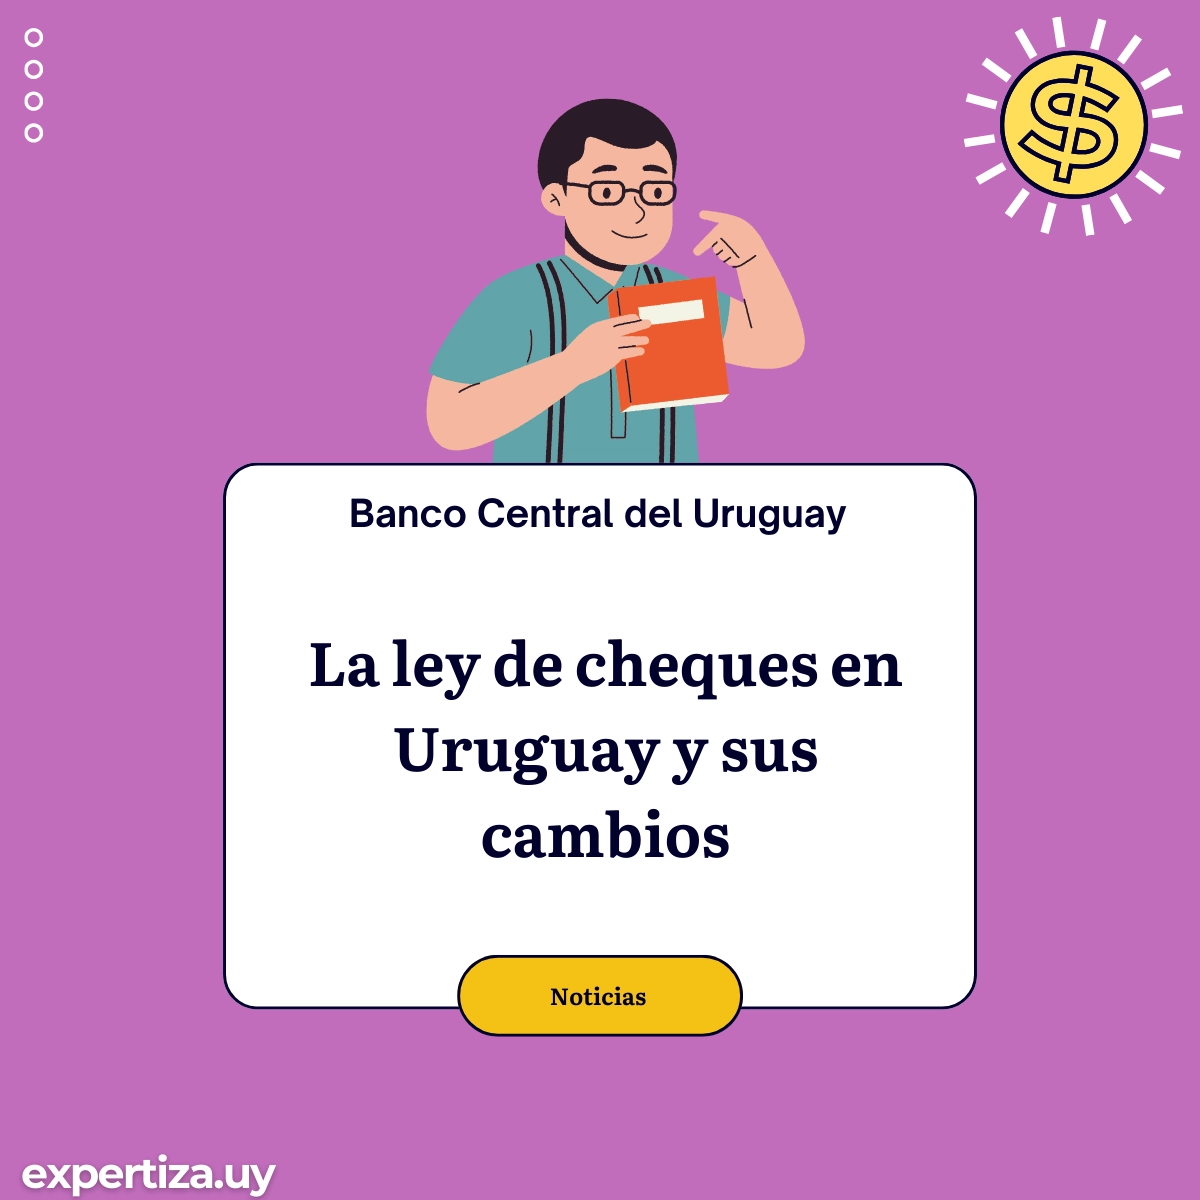 La ley de cheques en Uruguay y sus cambios.